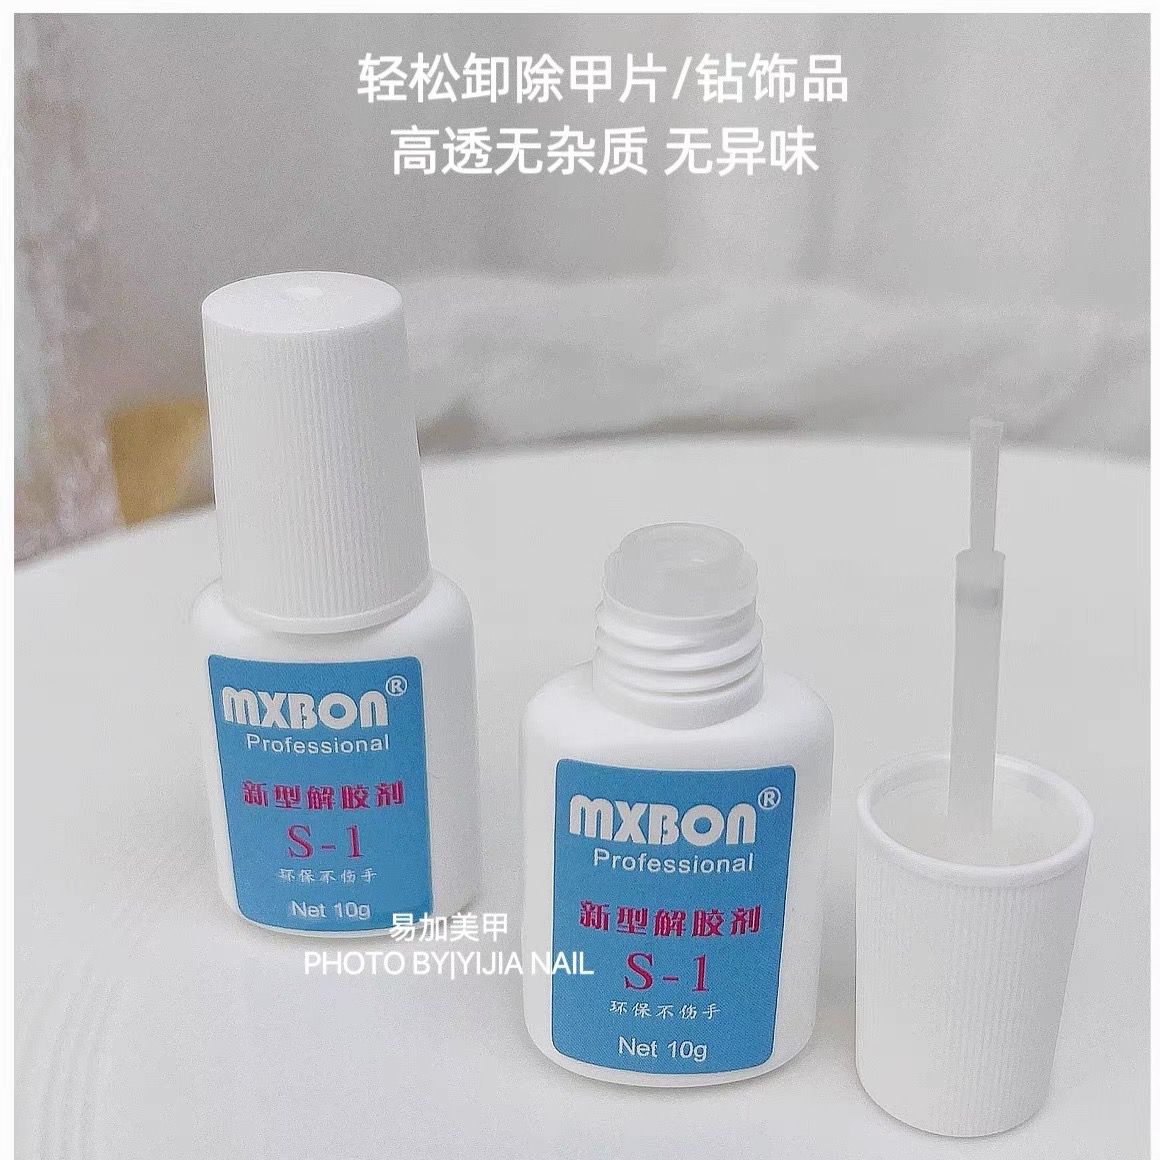 进口台湾MXBON美甲店专用卸甲胶粘性强持久防水快干美甲片胶水